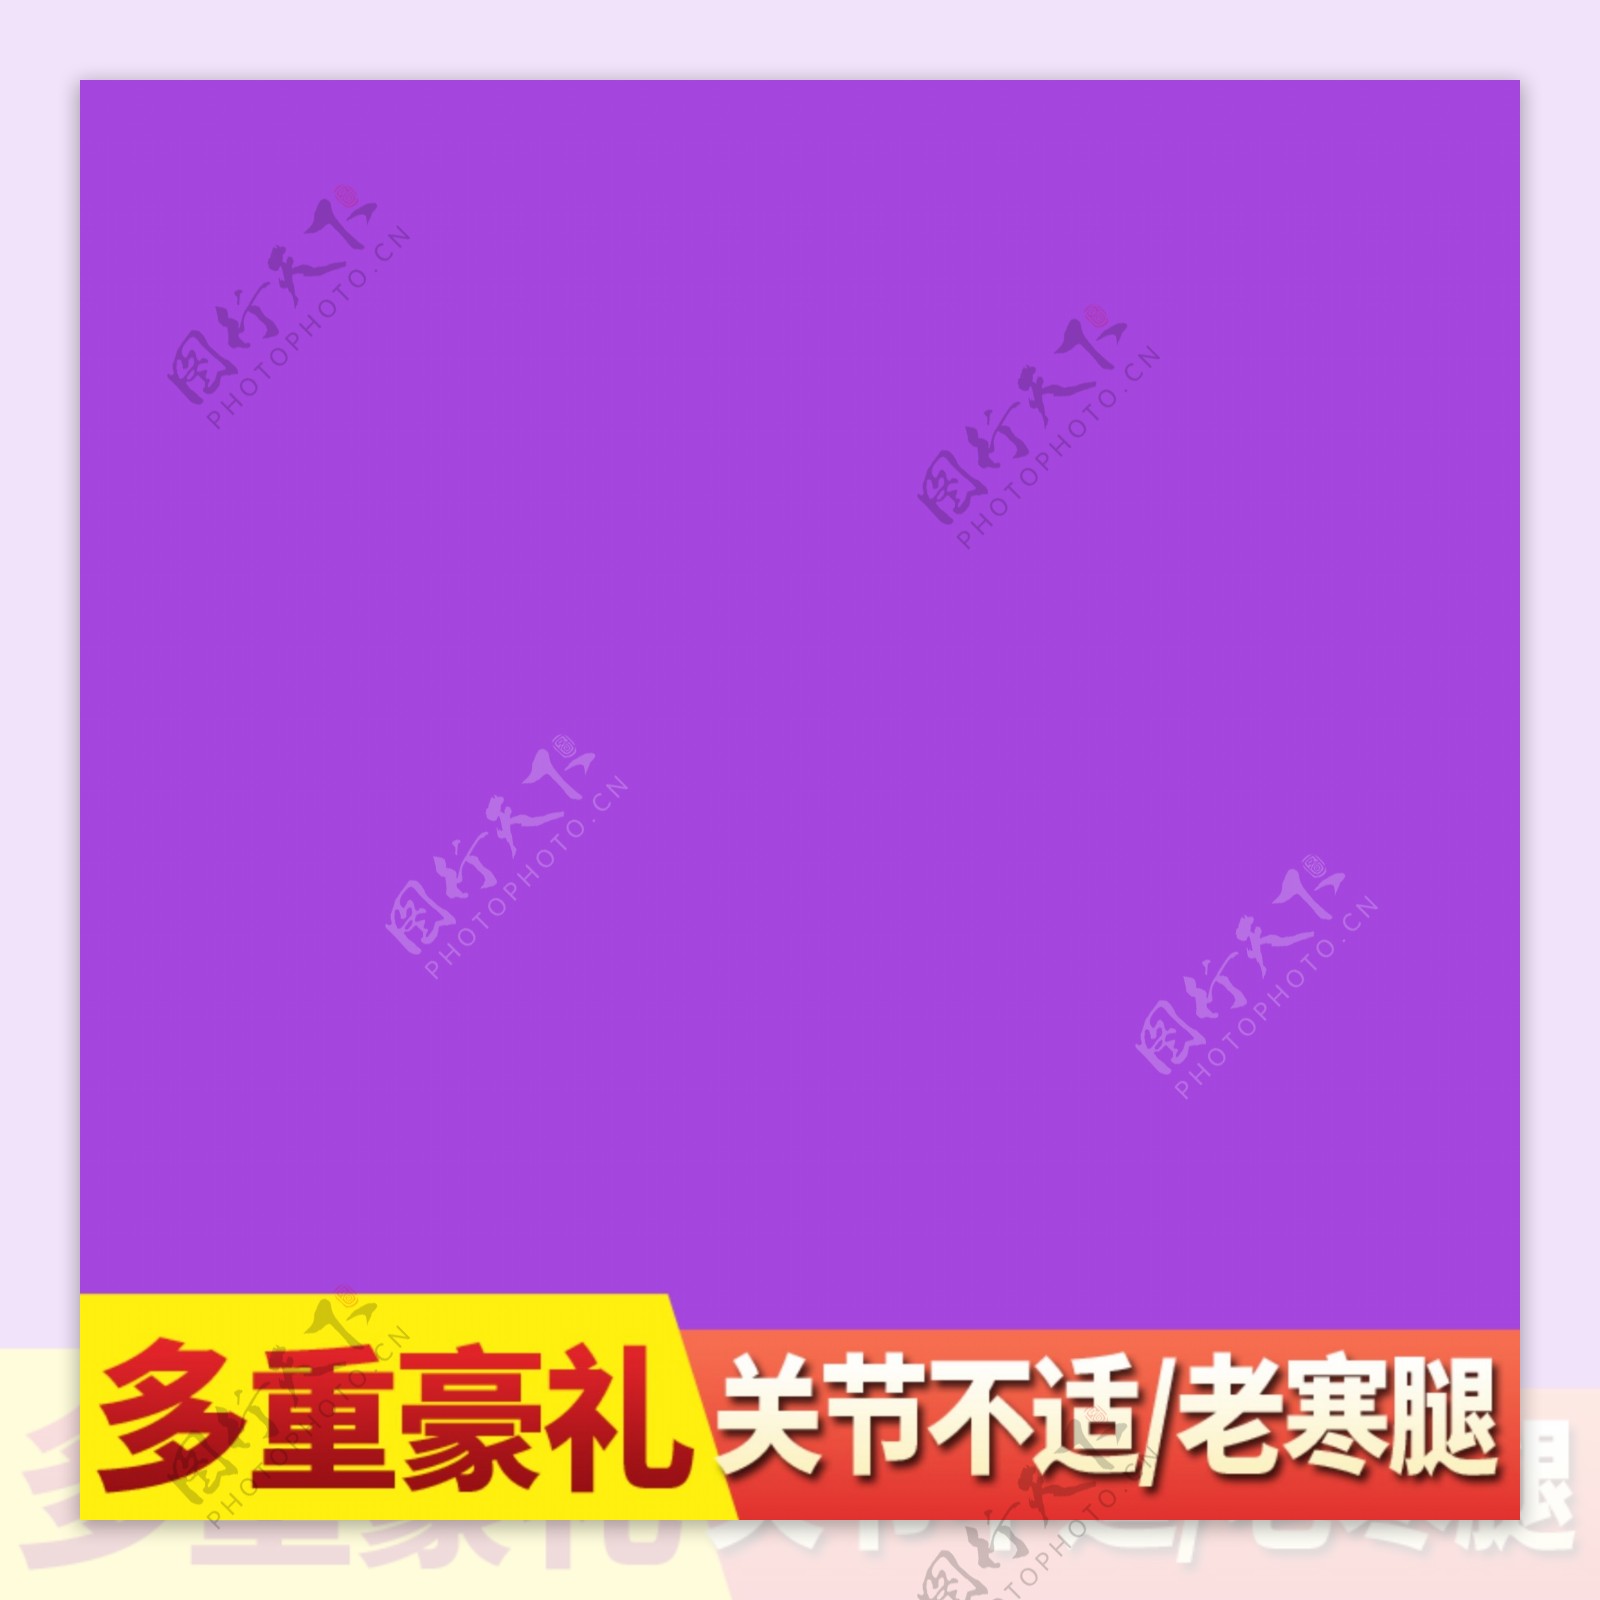 紫色背景主图标签淘宝电商直通车